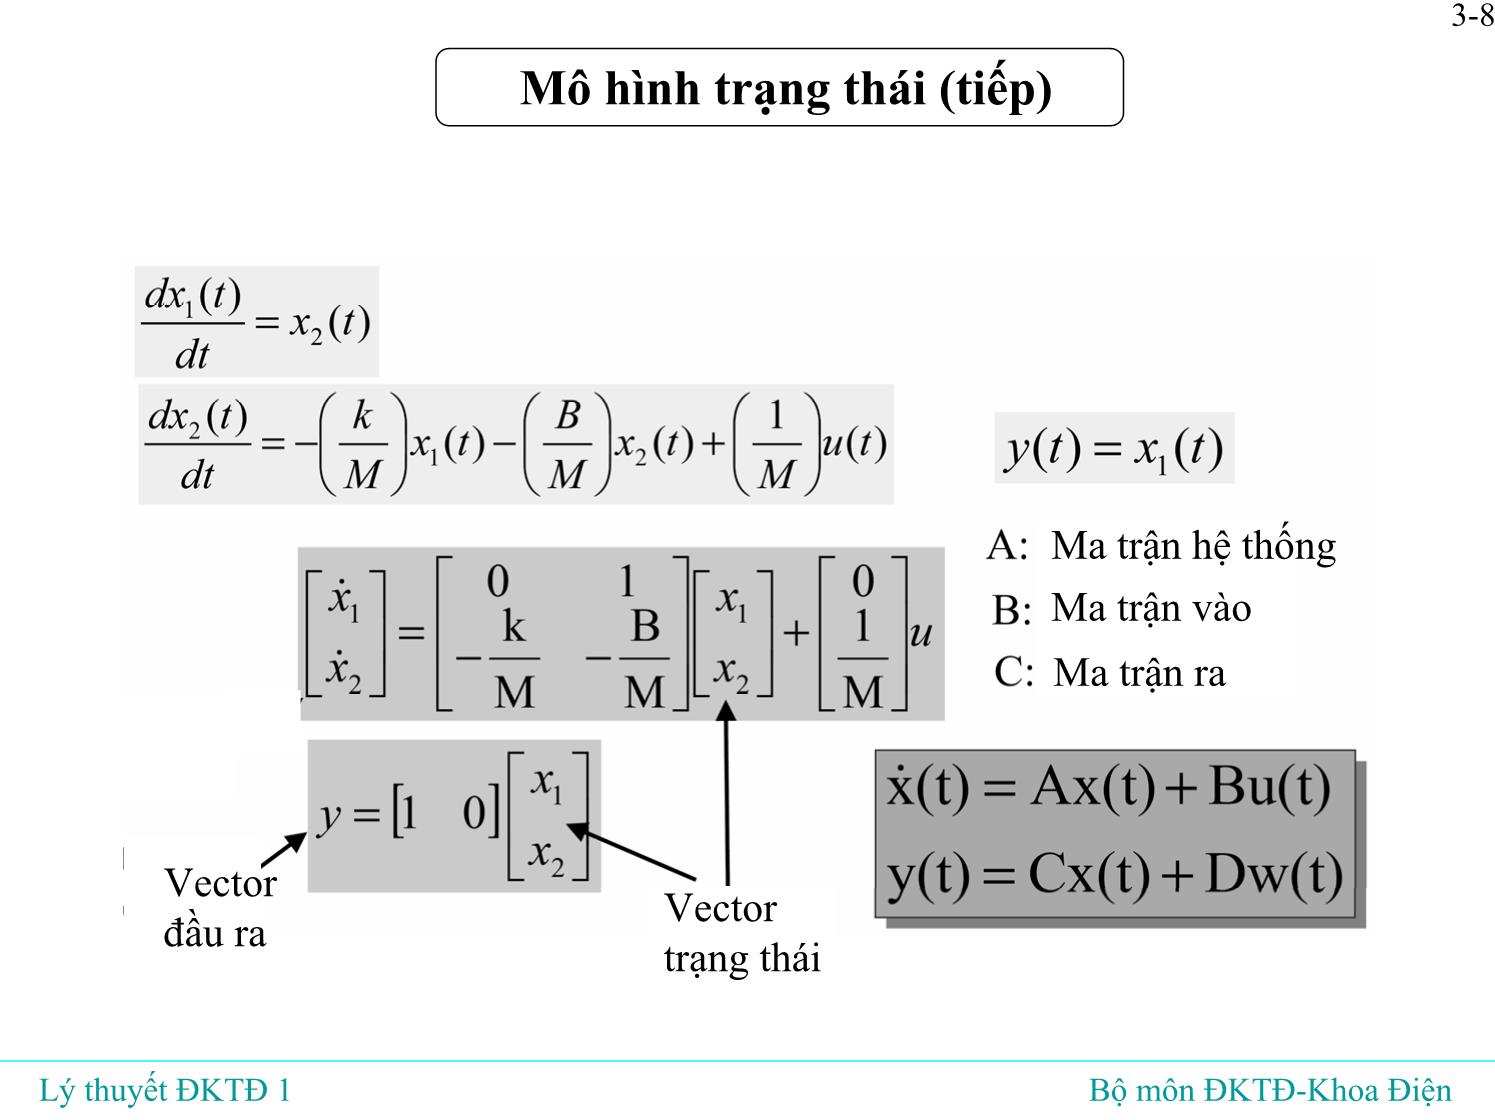 Bài giảng Lý thuyết điều khiển tự động - Bài 3: Mô hình toán học của hệ liên tục tuyến tín - Đỗ Tú Anh trang 9